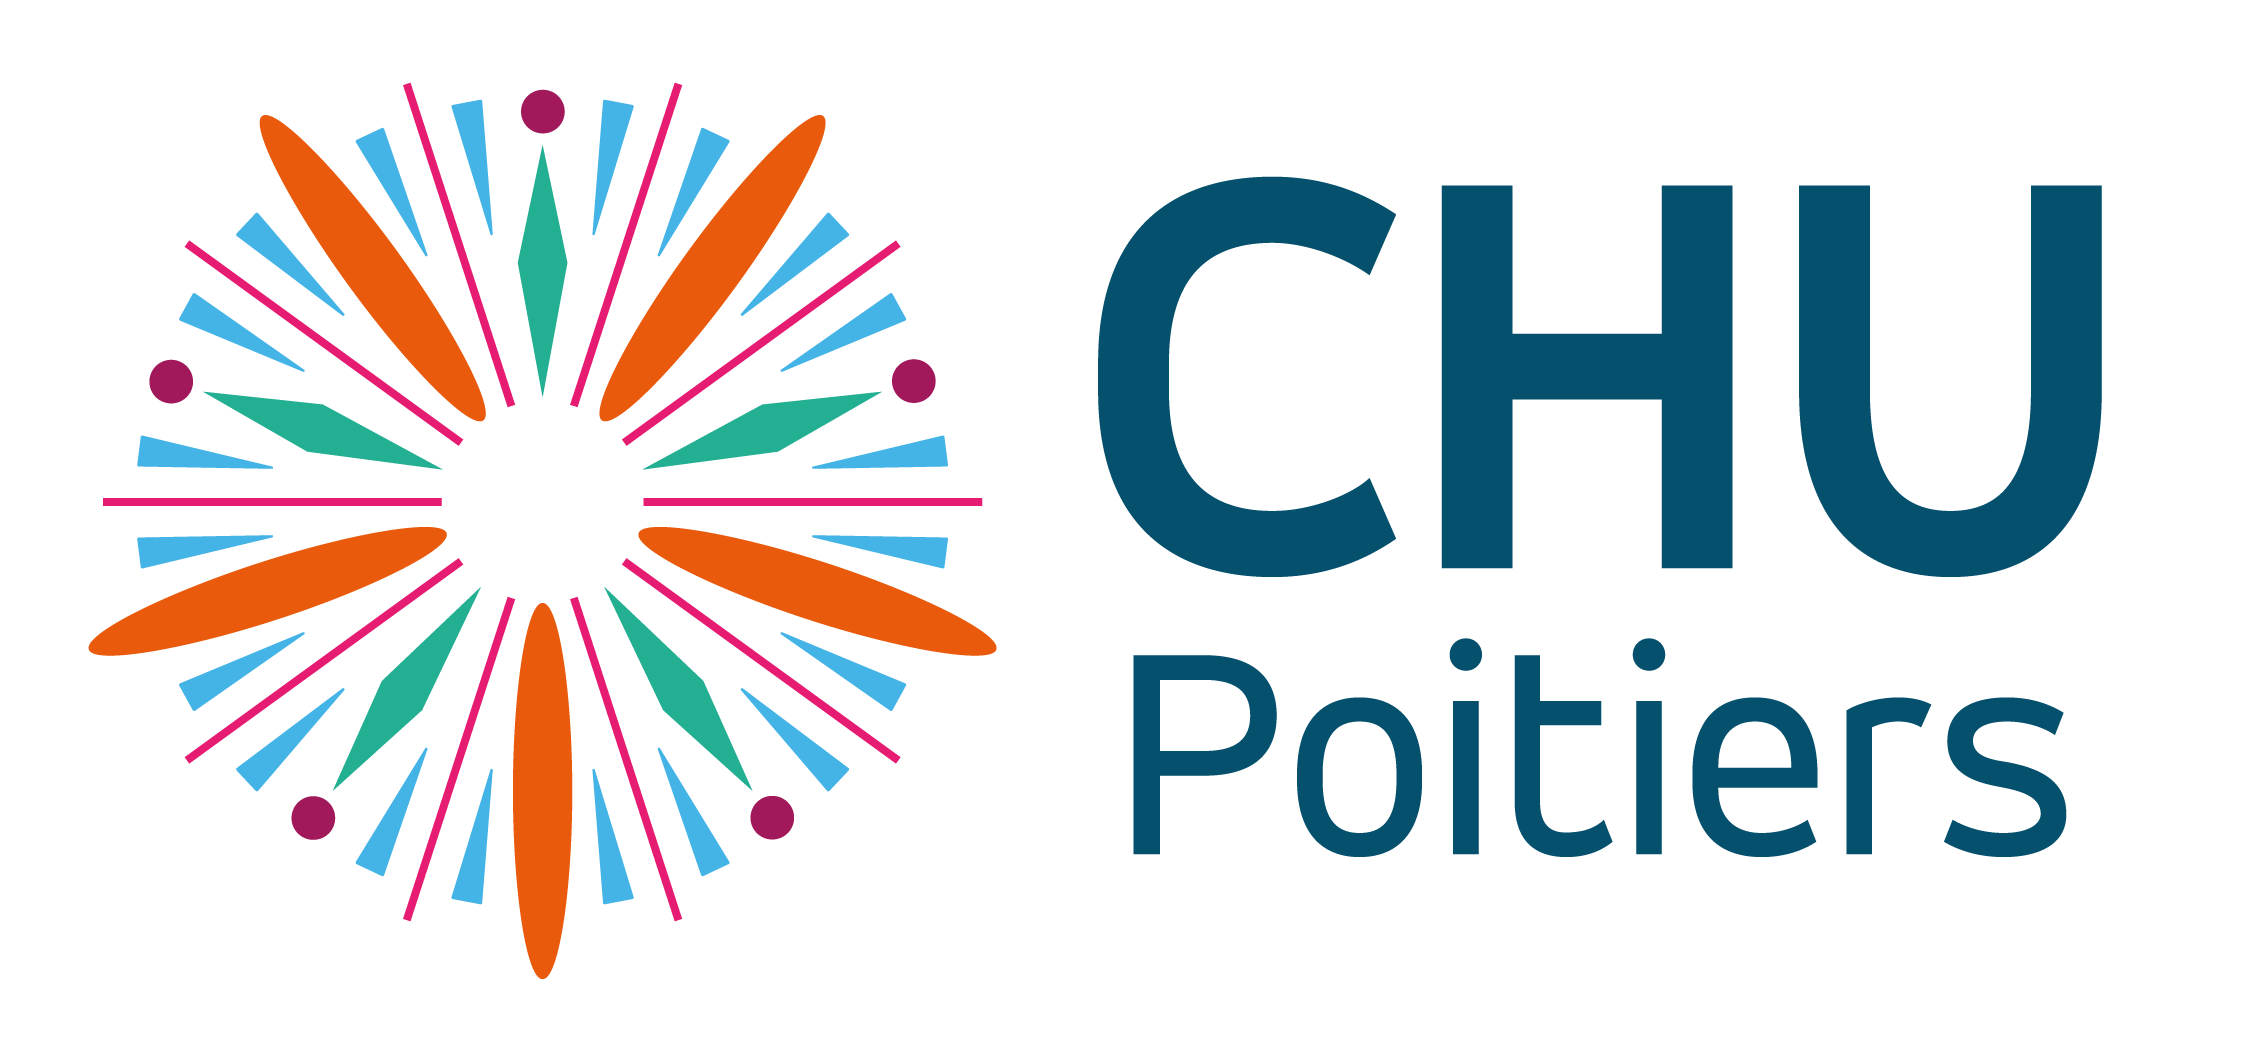 Logo CHU Poitiers